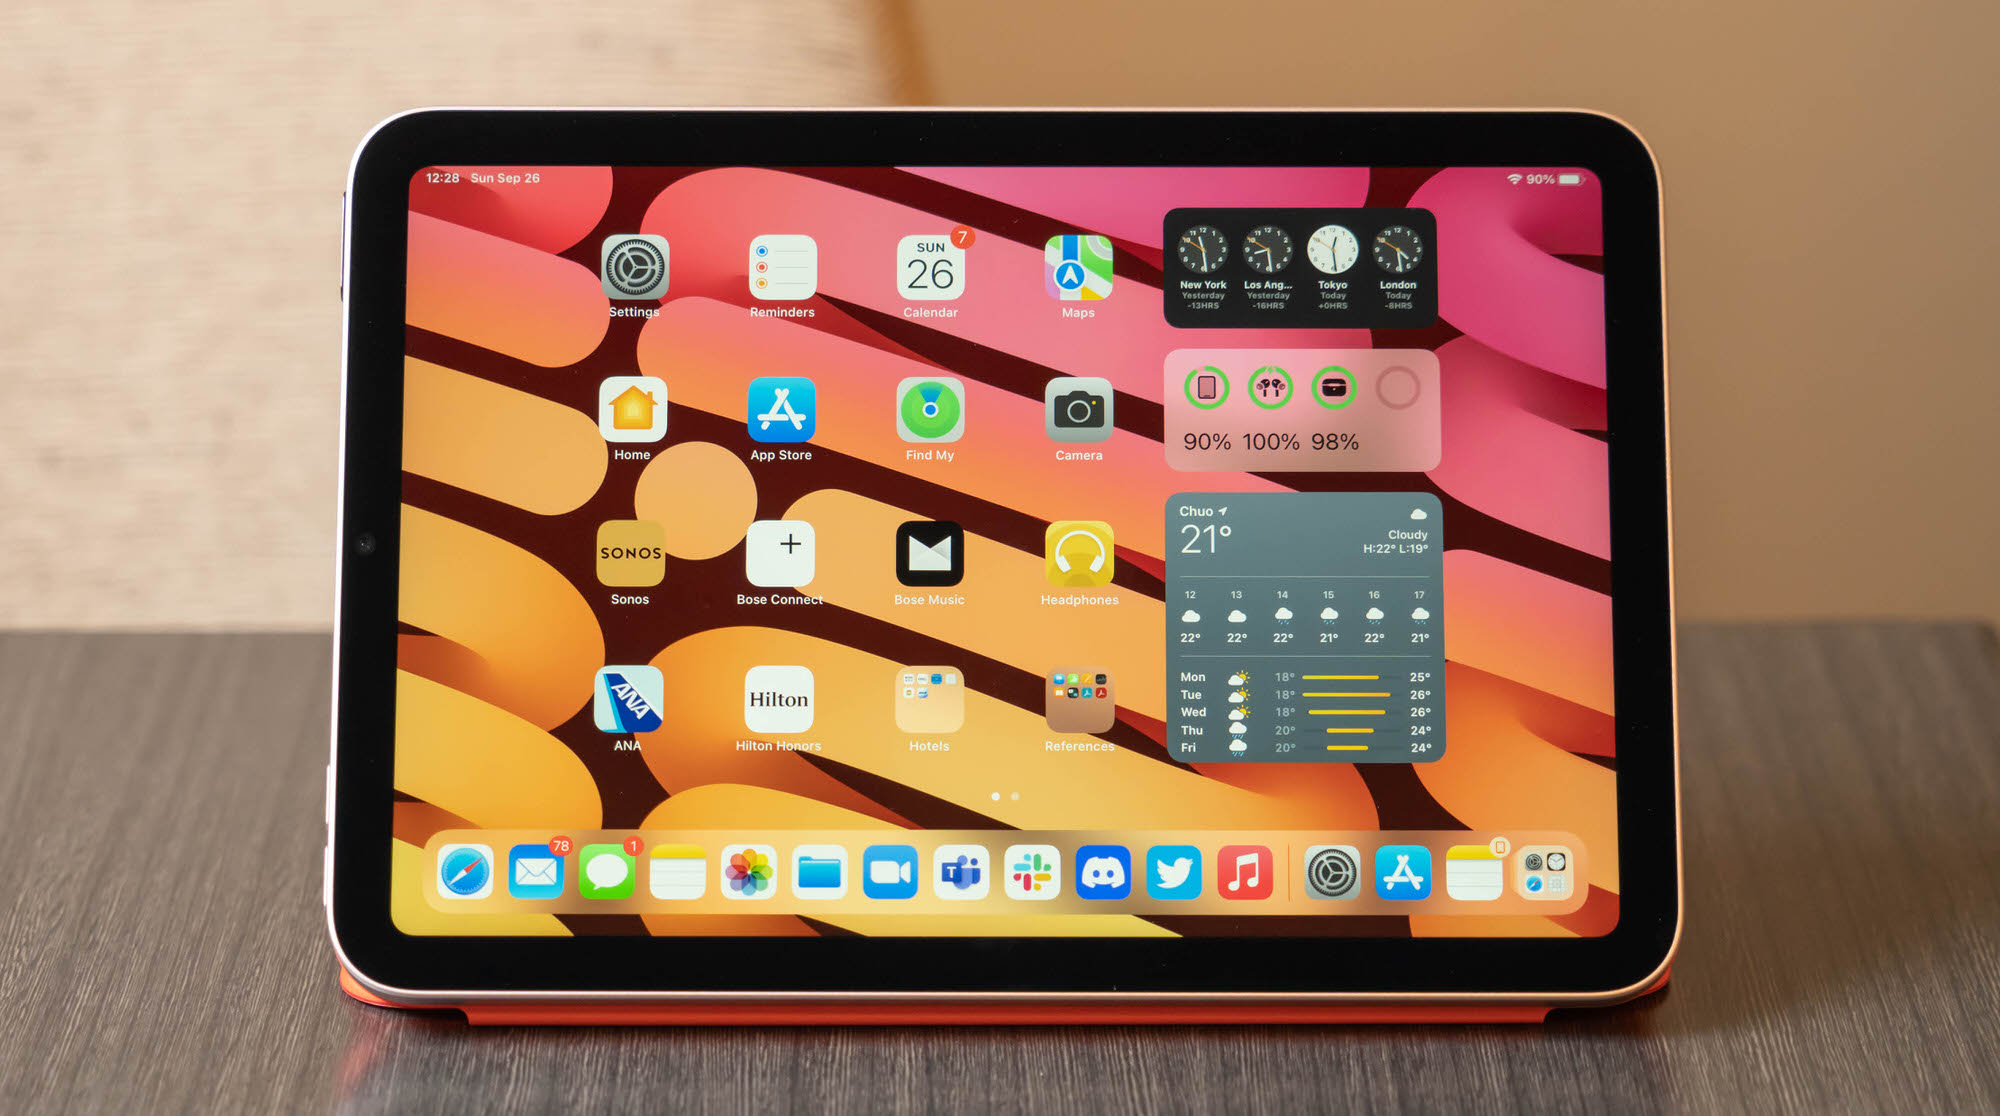 第1世代 アイパッドエアー Apple iPad Air 16GB ソフトバンク